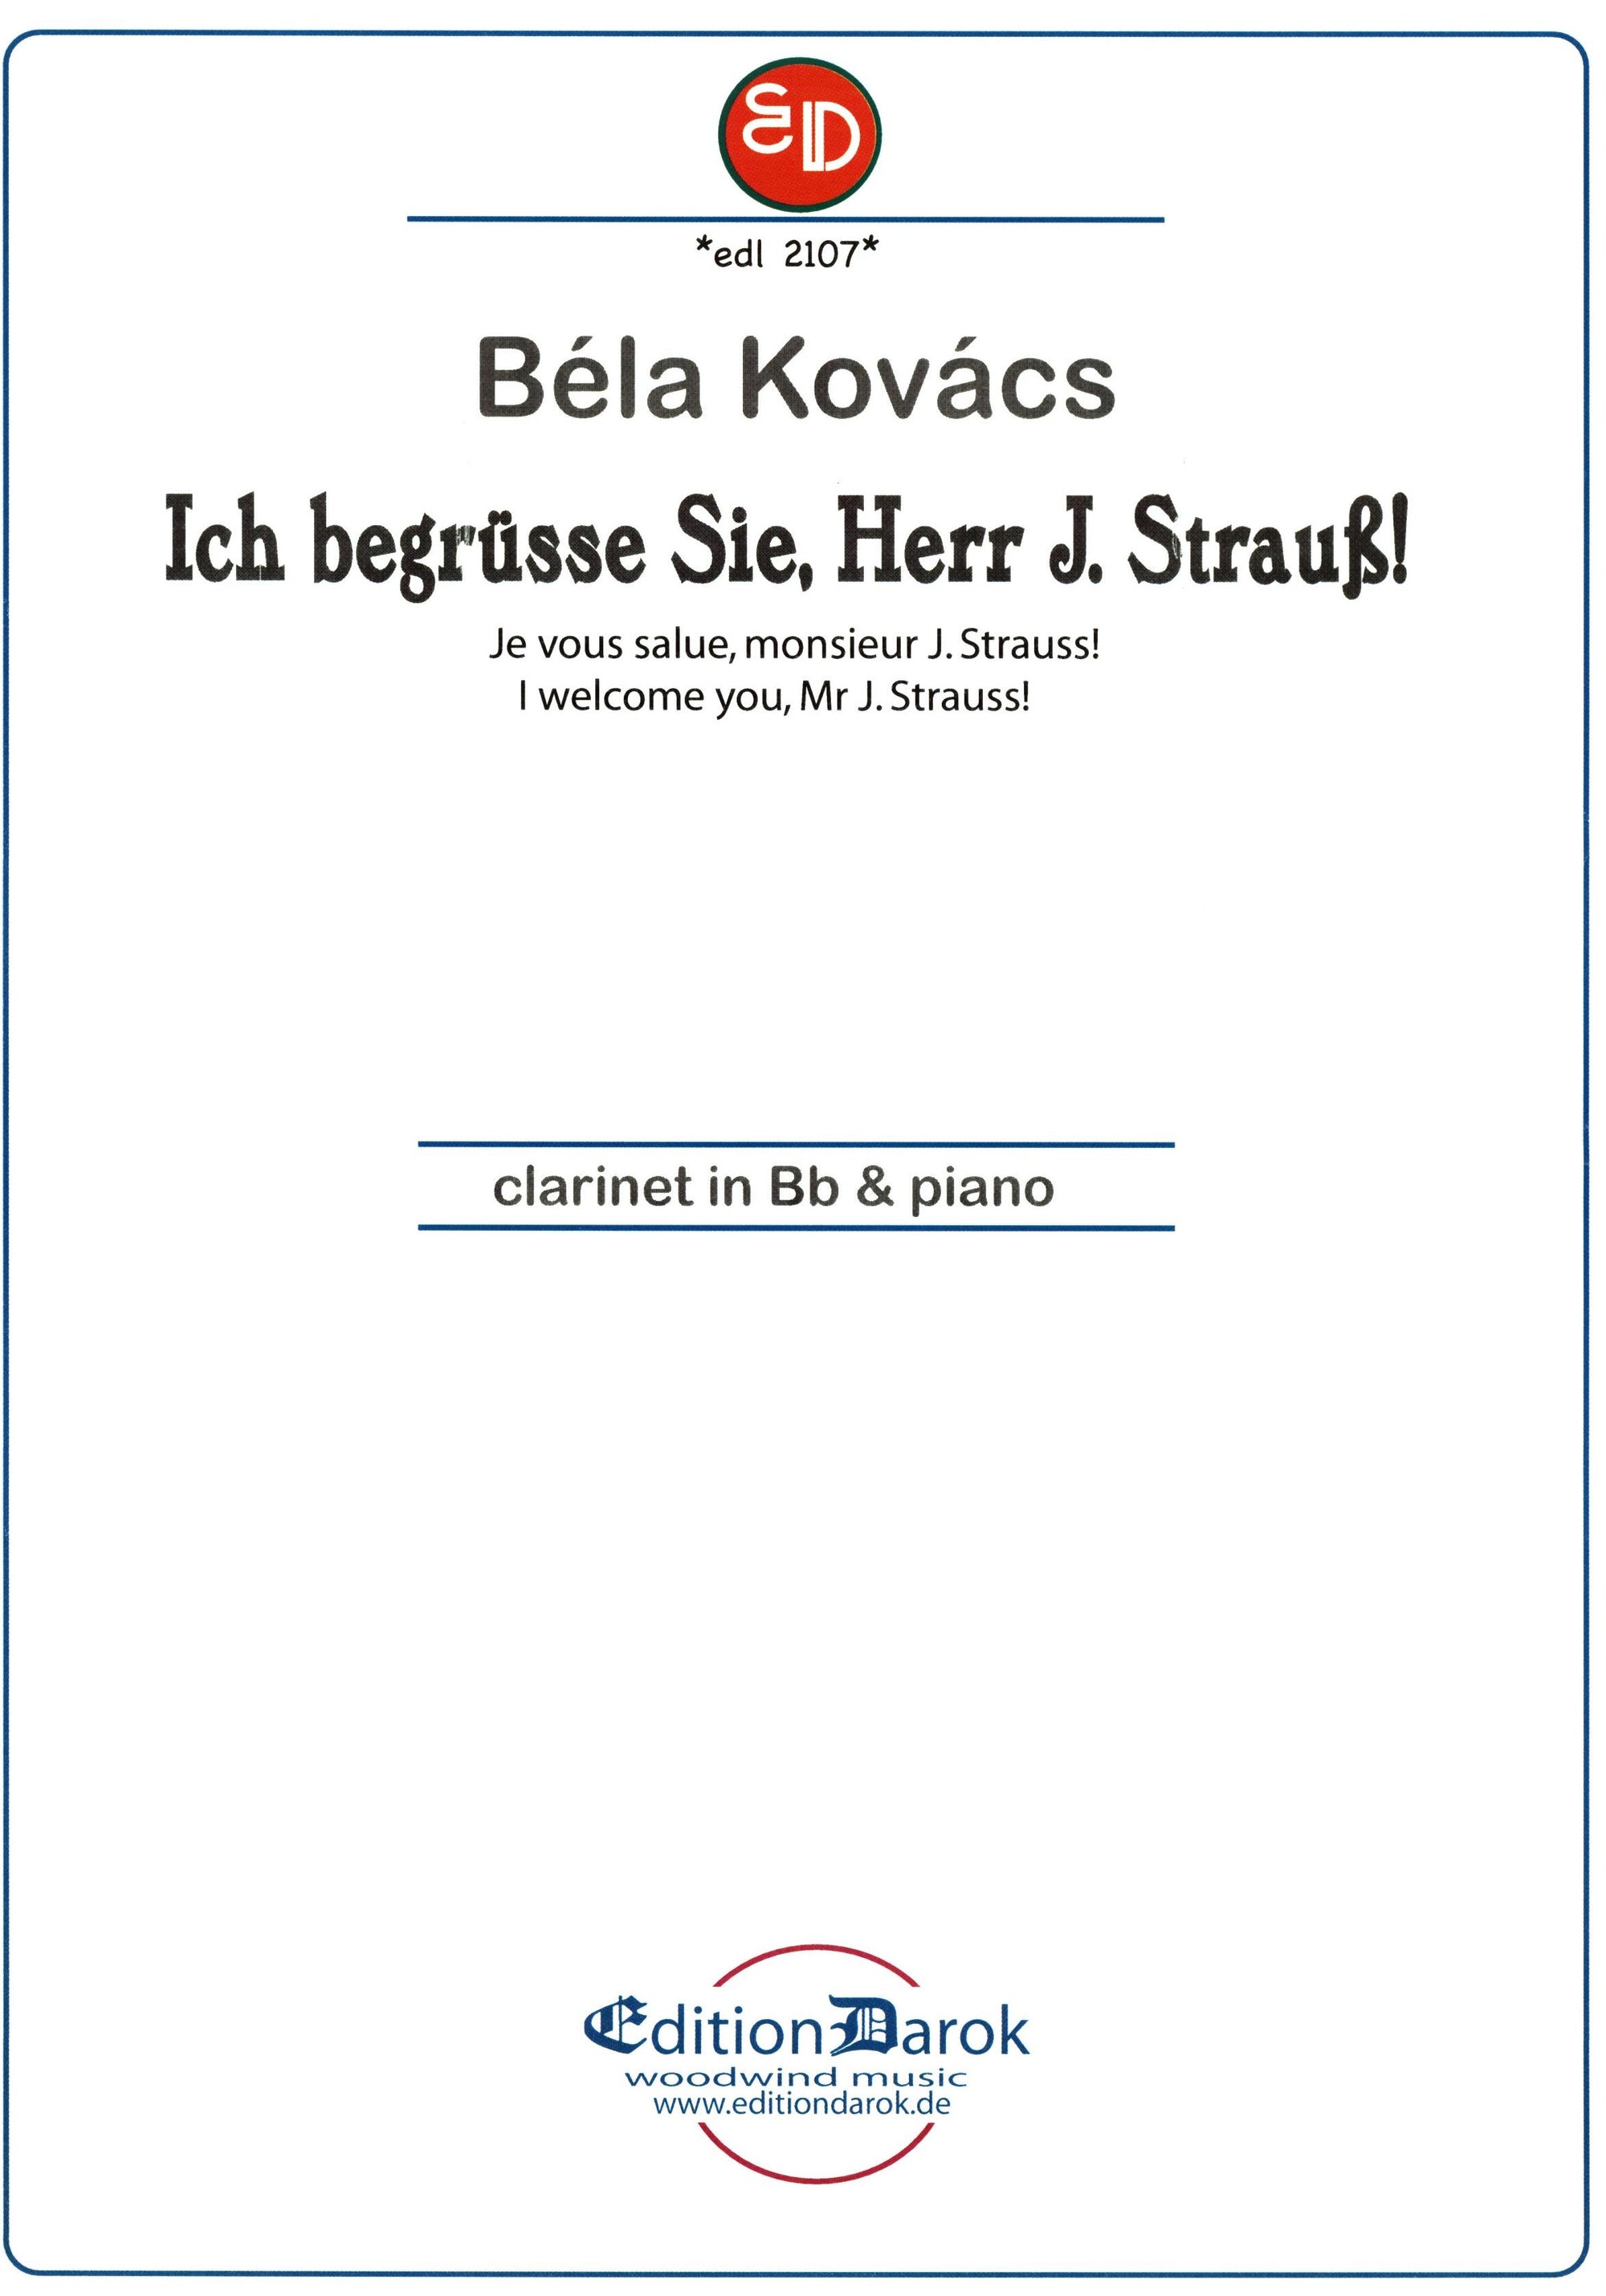 Kovács: I welcome you, Mr. J. Strauss!